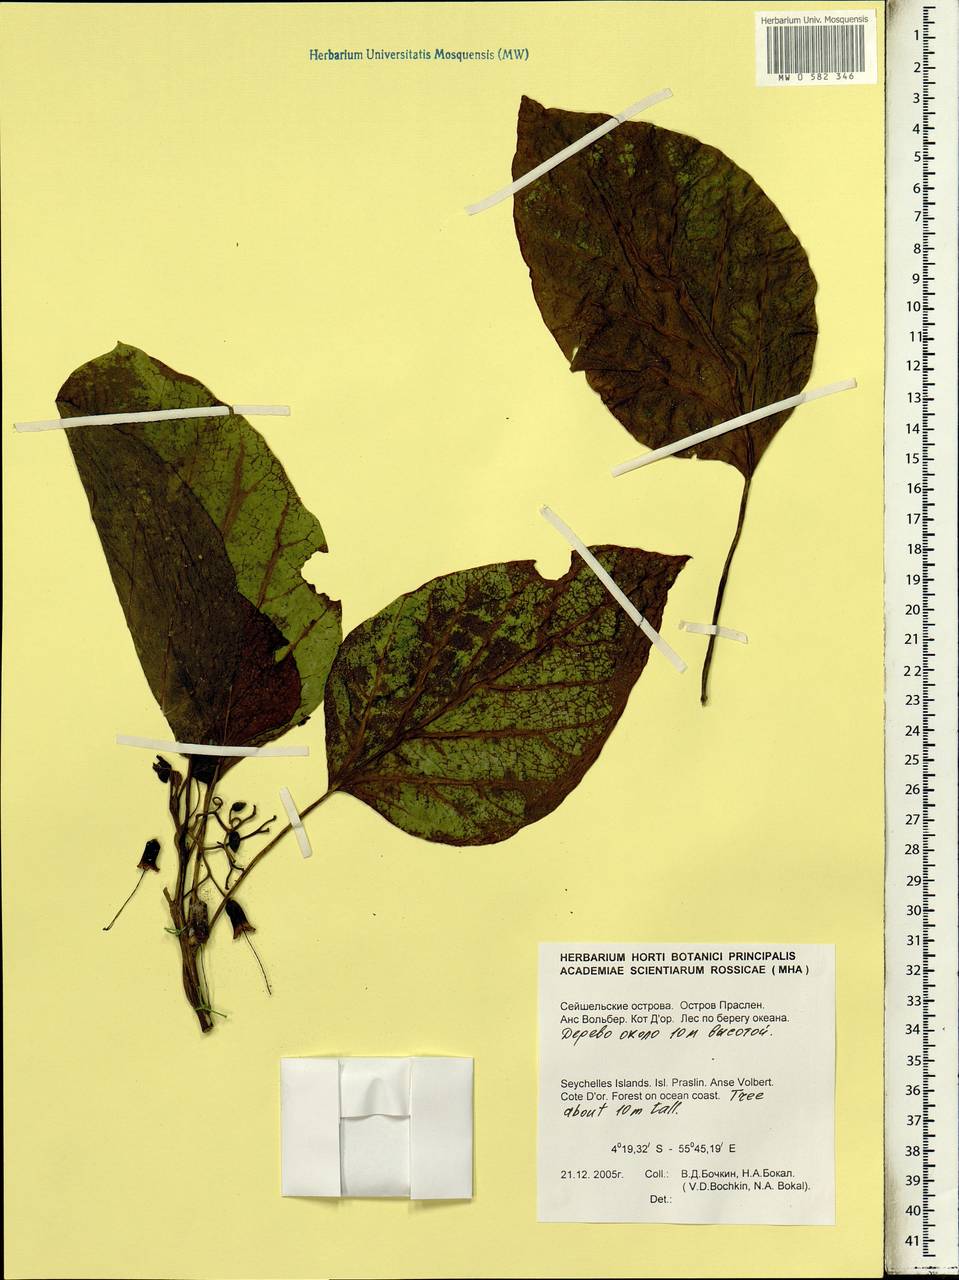 Magnoliopsida, Африка (AFR) (Сейшельские острова)